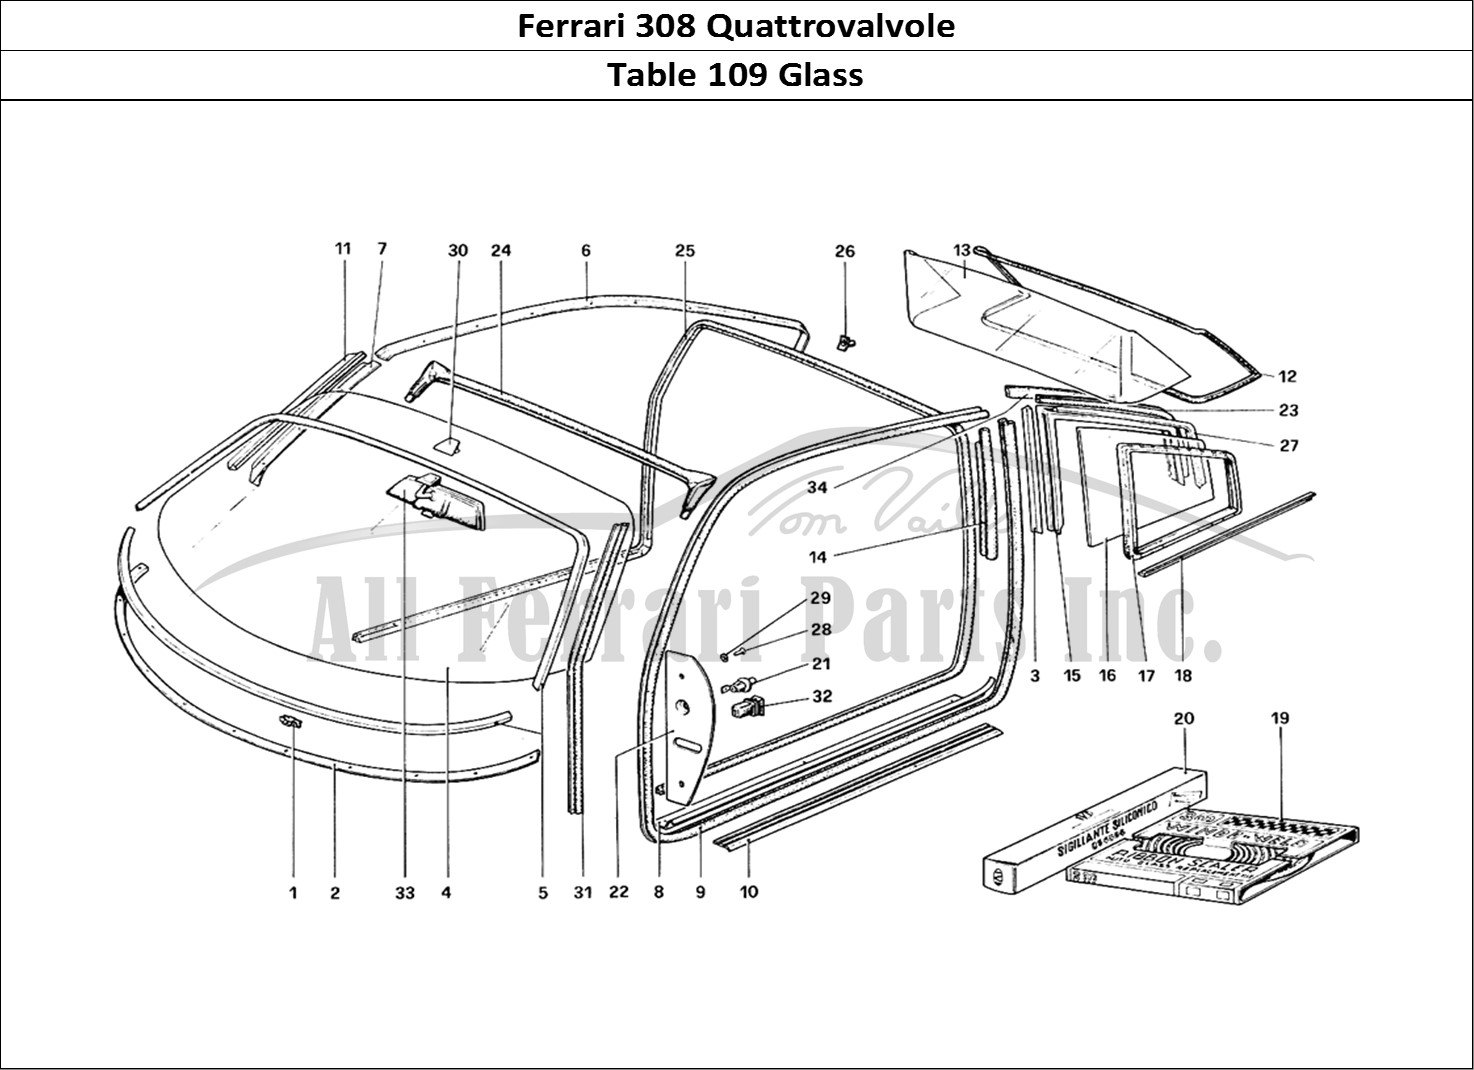 Ferrari Parts Ferrari 308 Quattrovalvole (1985) Page 109 Glasses